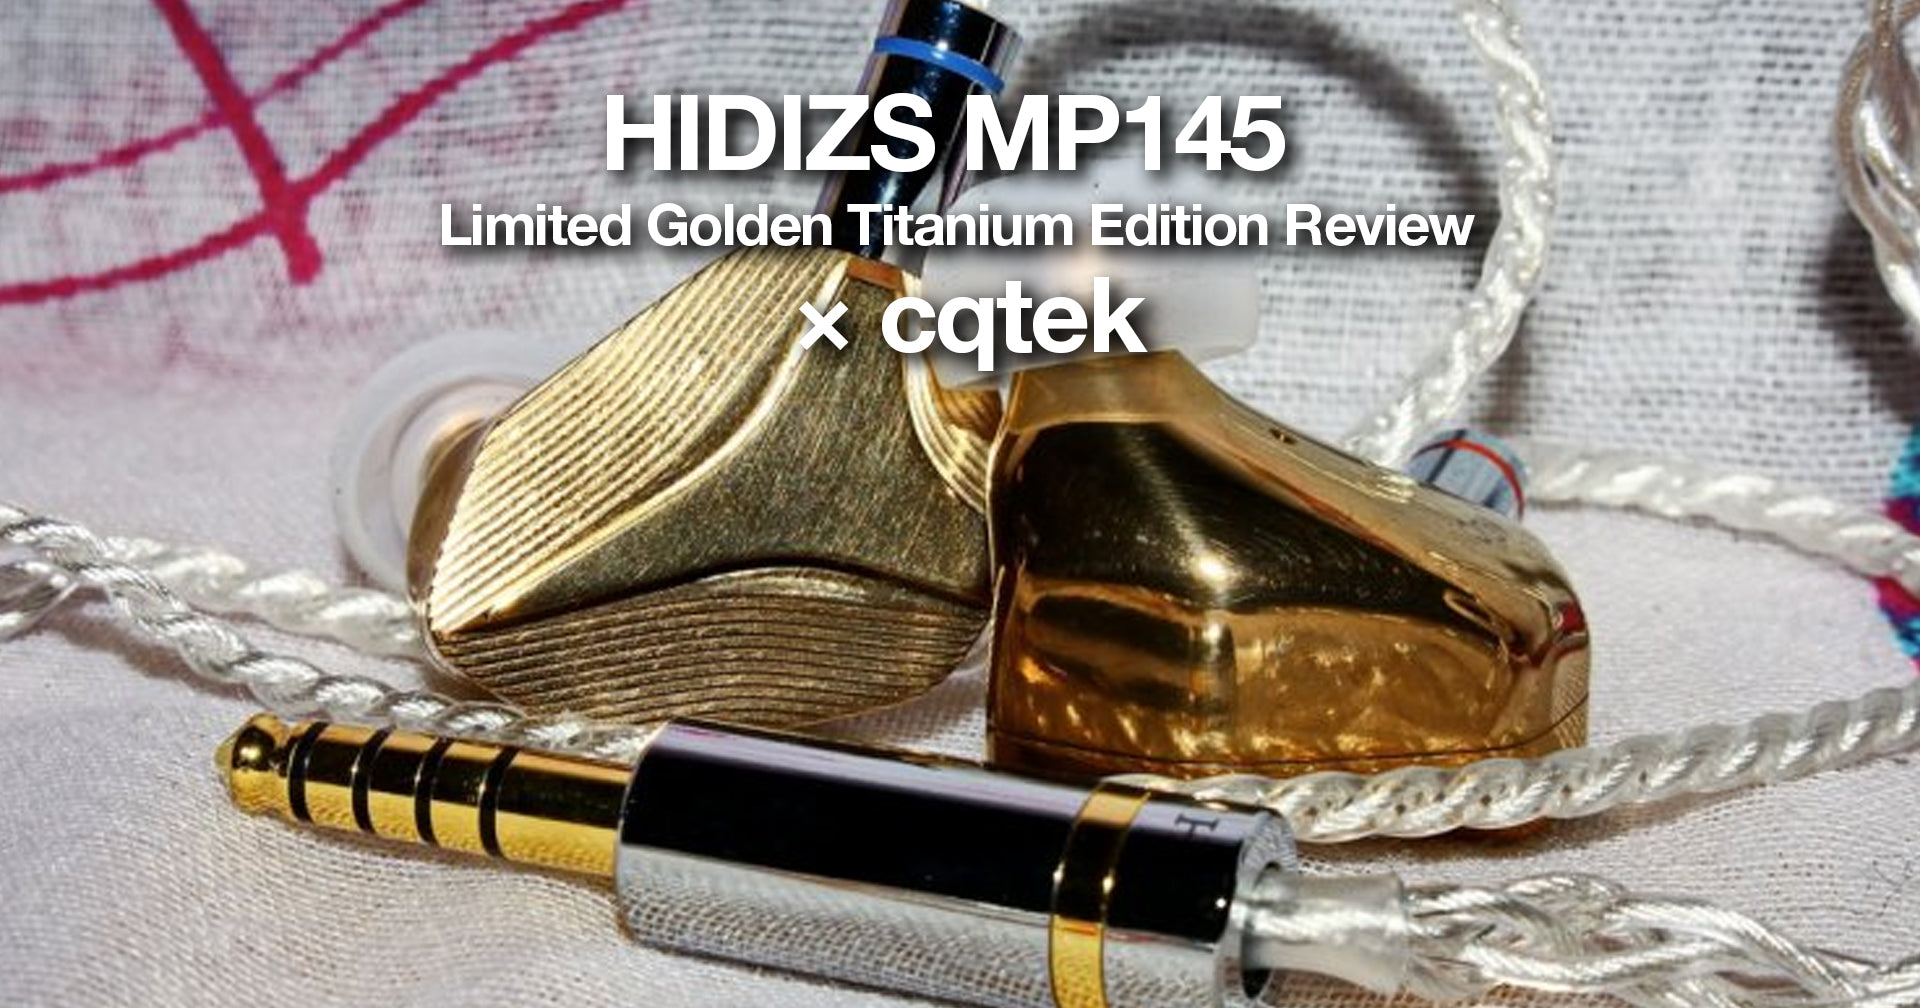 HIDIZS MP145 LGTE Review - cqtek